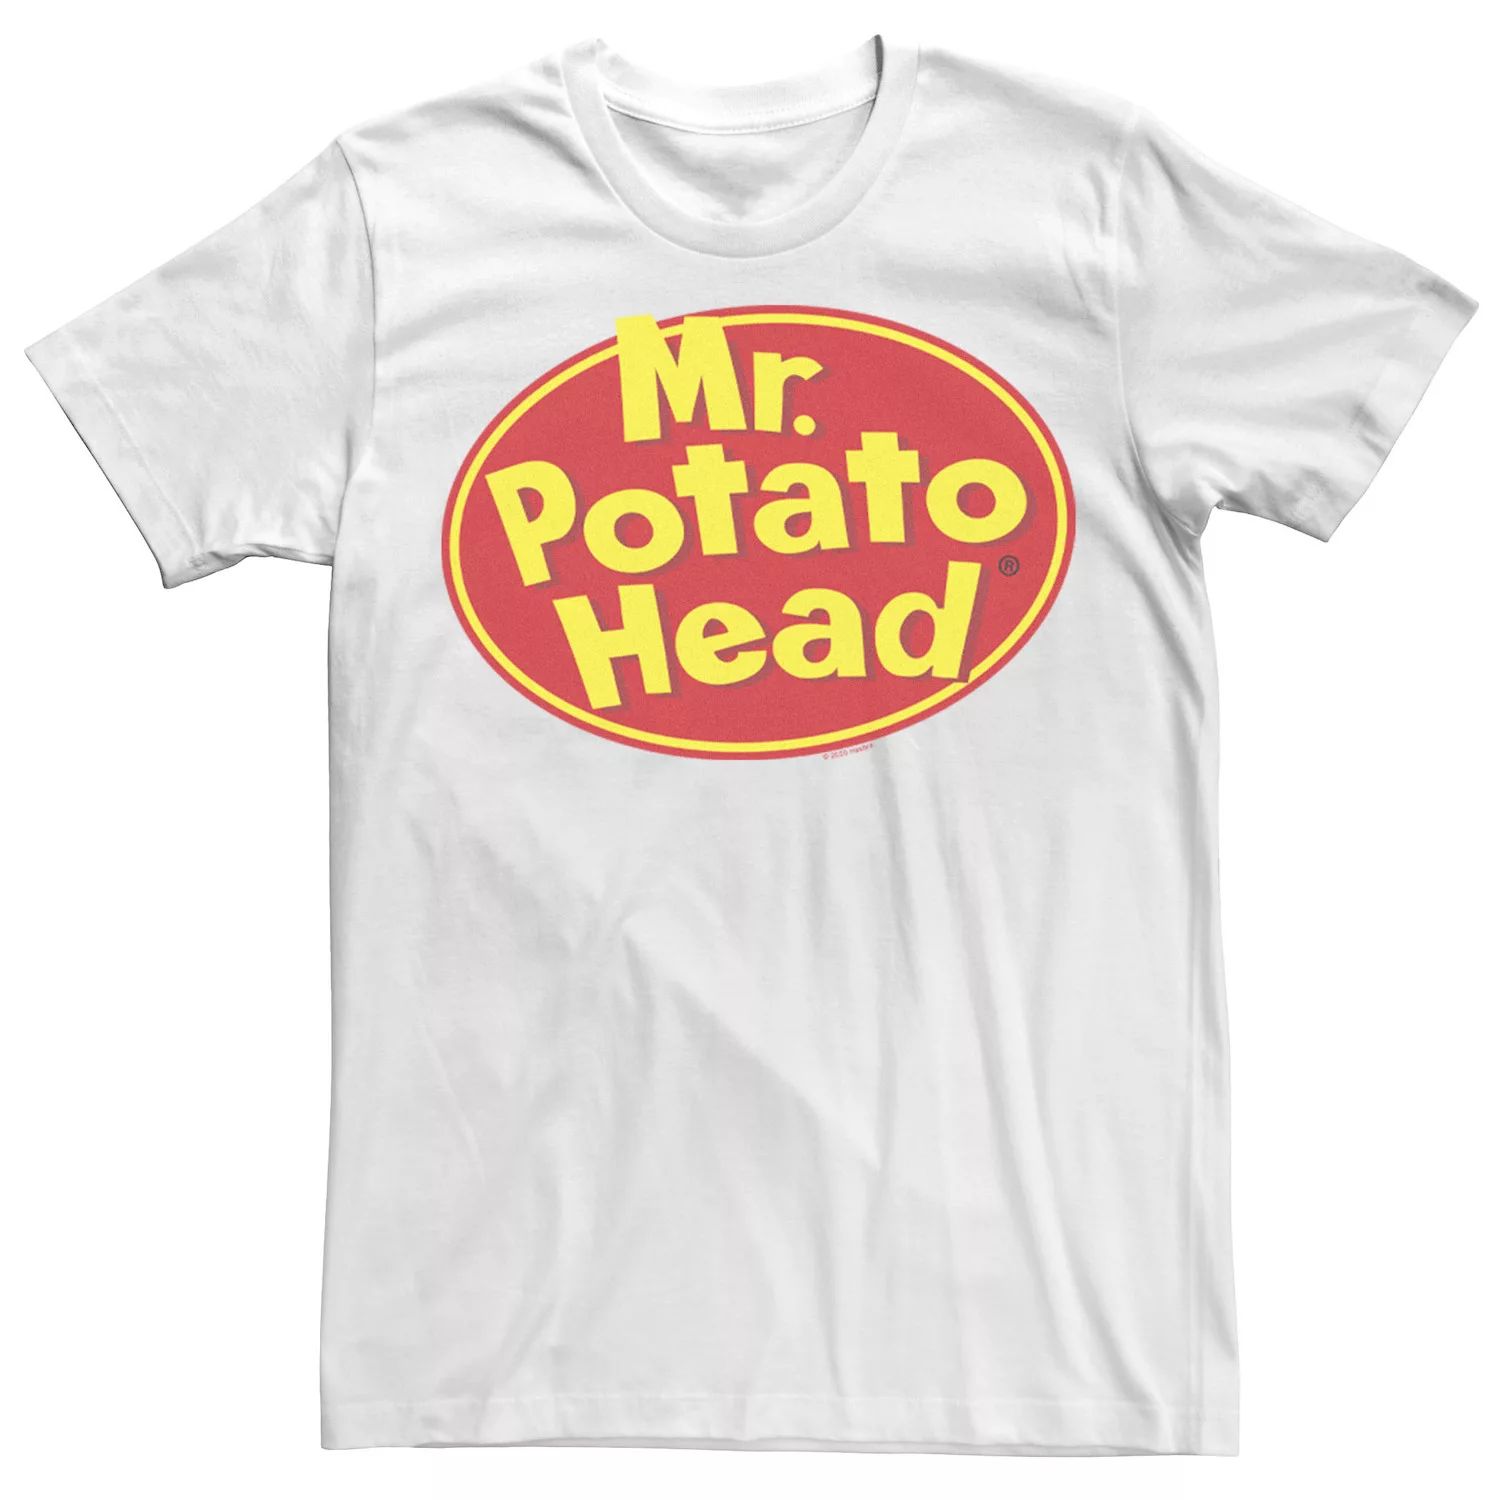 Мужская футболка с логотипом Mr. Potato Head Licensed Character potato head suites